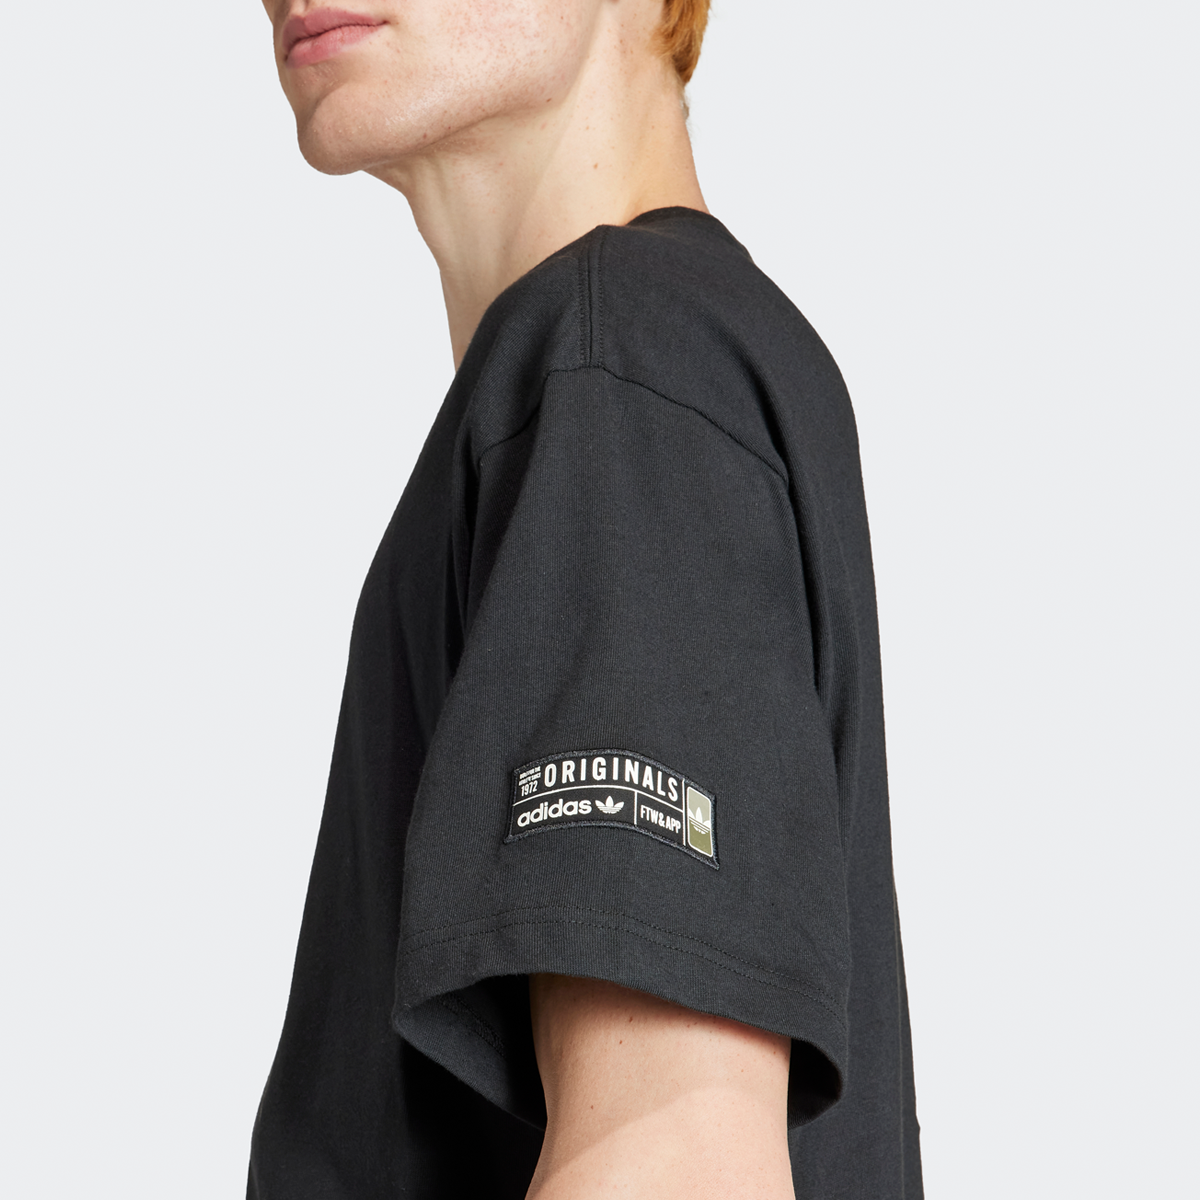 adidas Originals Unstoppable T-shirt T-shirts Heren black maat: S beschikbare maaten:S M L XL